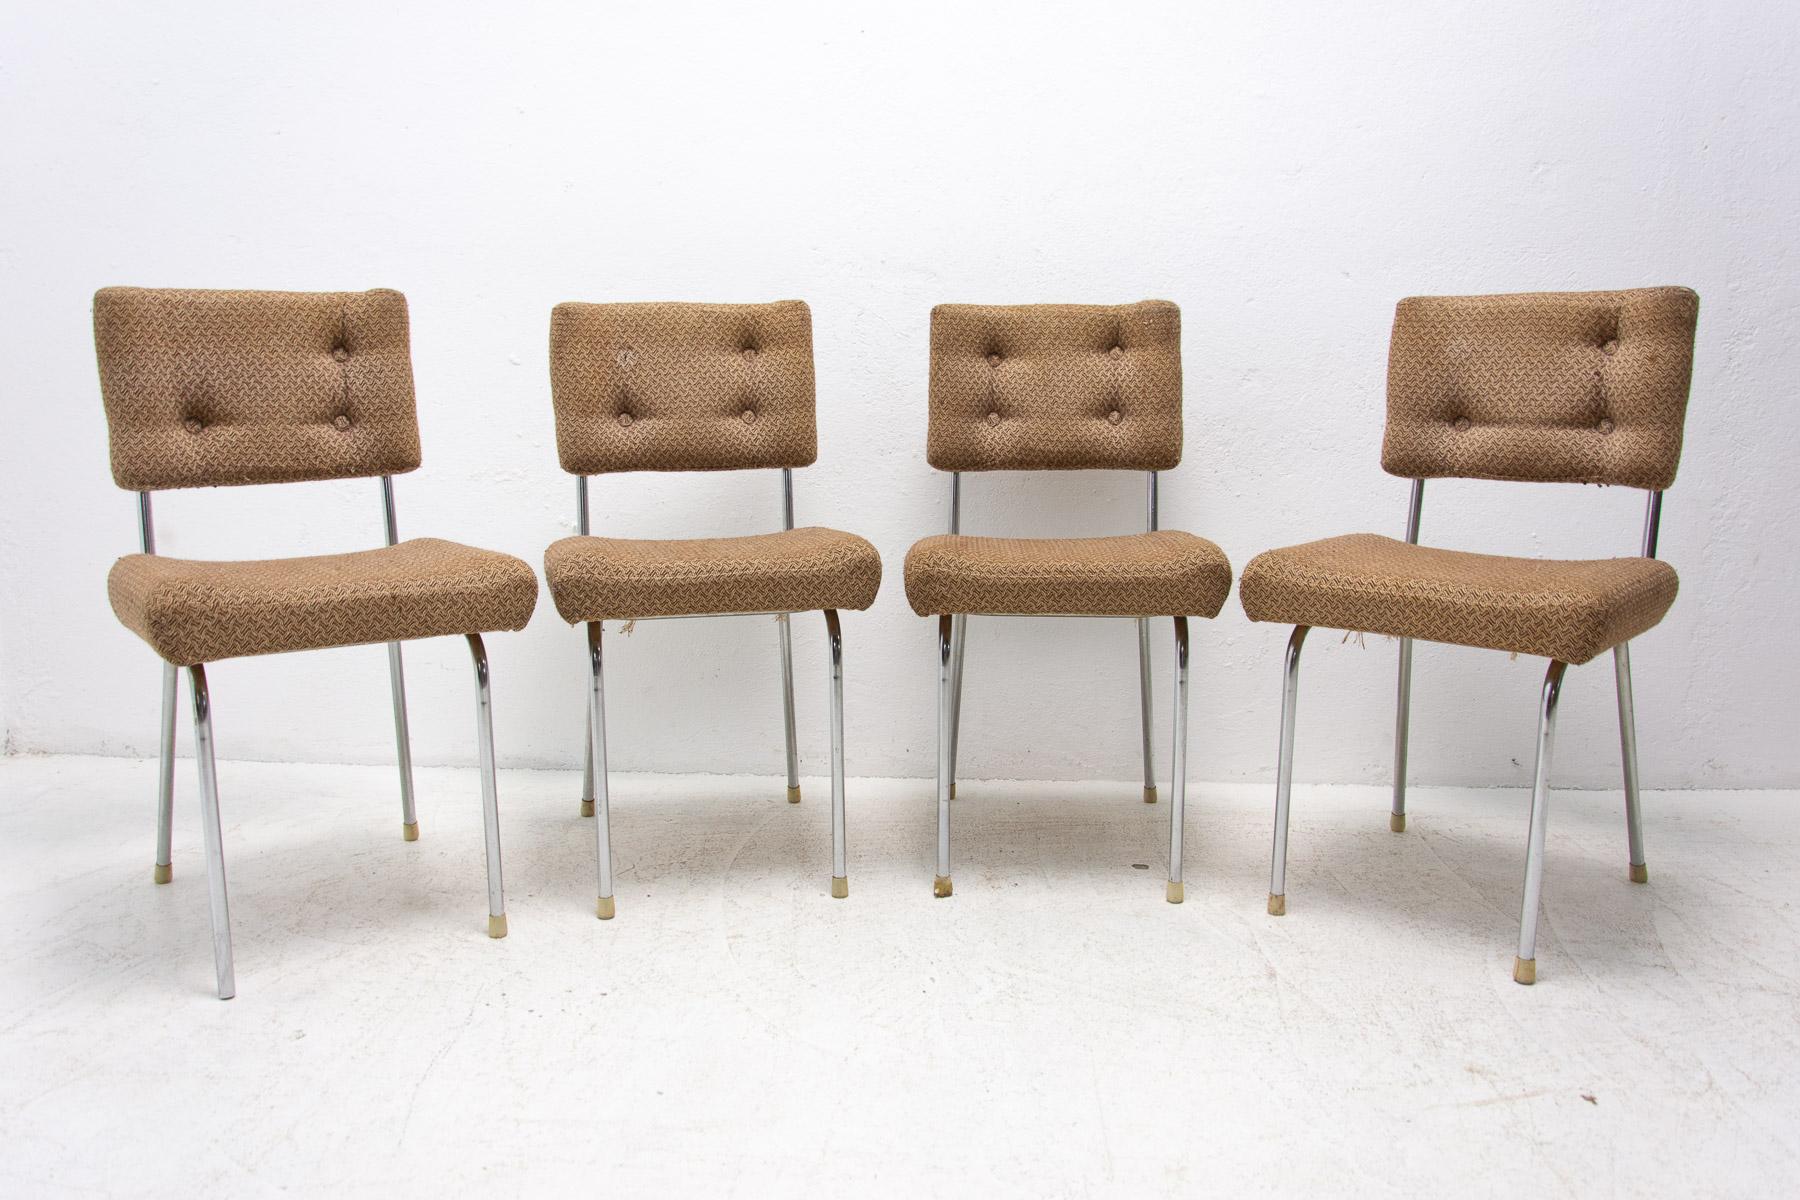 Cafe- oder Esszimmerstühle aus der Mitte des Jahrhunderts mit verchromten Beinen. Es wurde in der ehemaligen Tschechoslowakei in den 1960er Jahren hergestellt. Die Stühle sind strukturell in gutem Vintage-Zustand, die Polsterung zeigt Alters- und